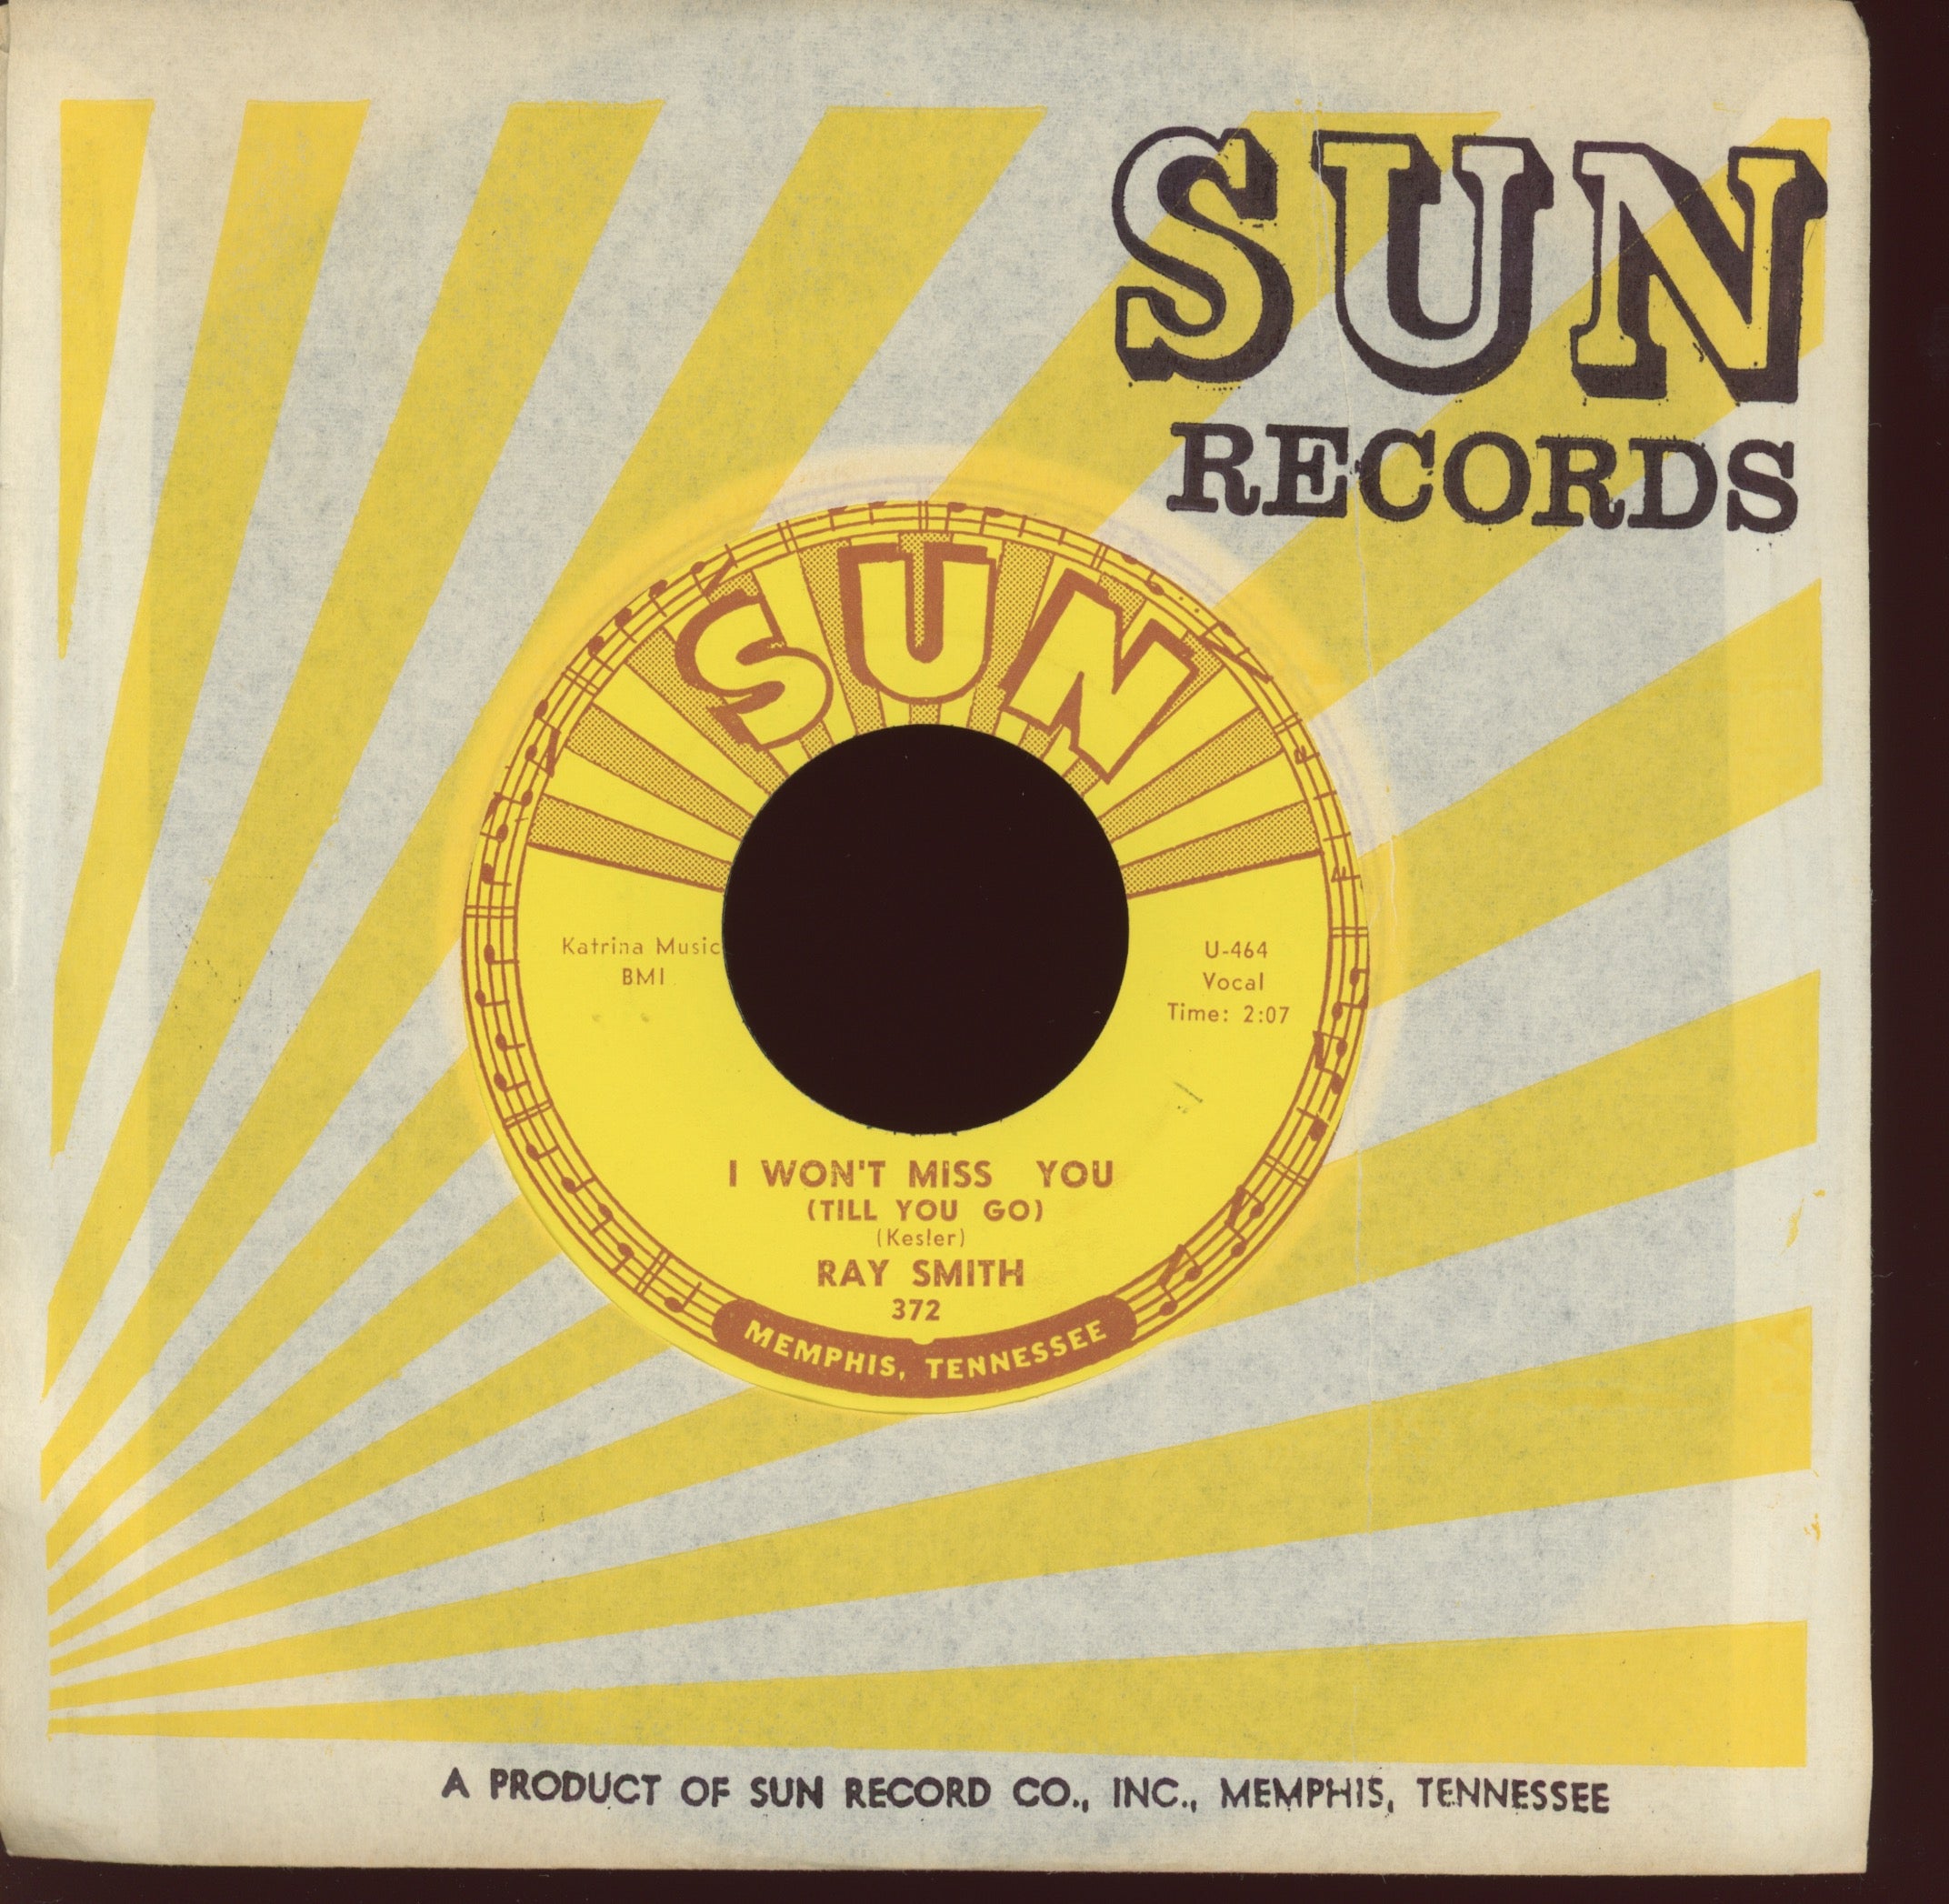 Ray Smith - Travlin' Salesman on Sun